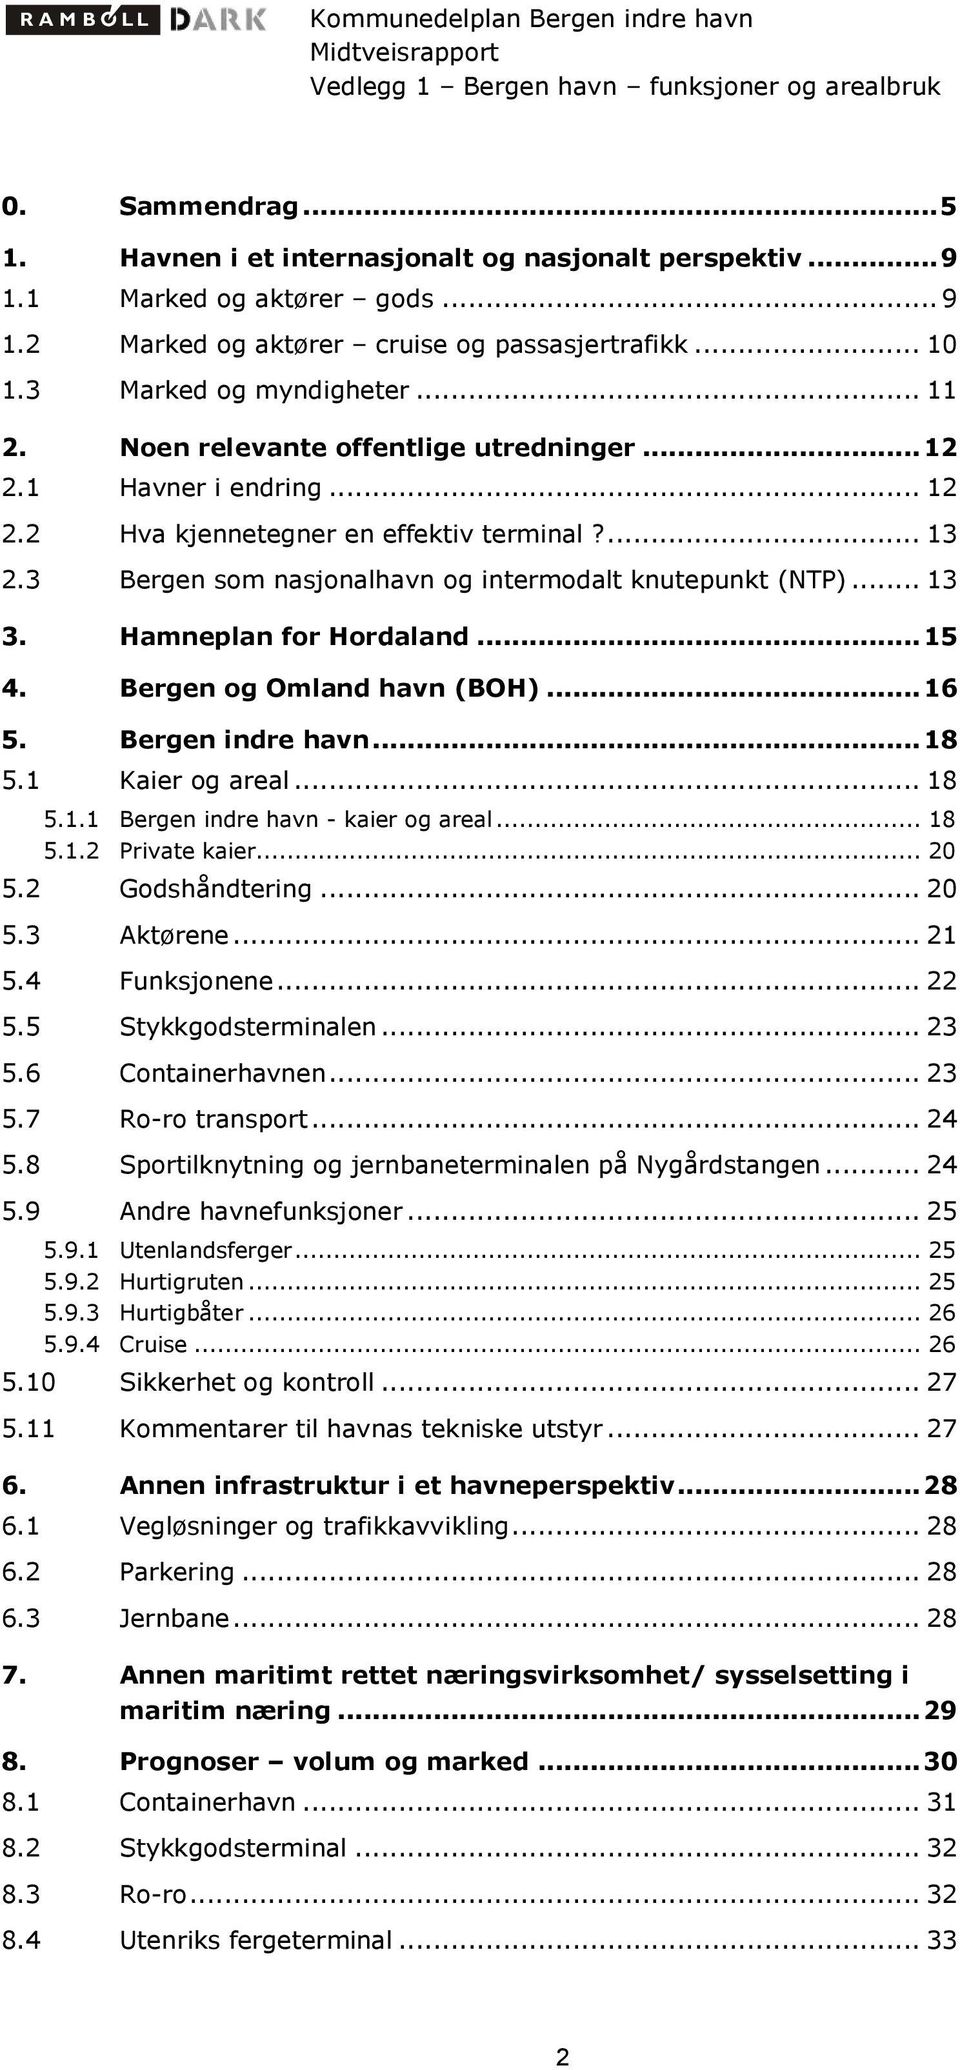 Hamneplan for Hordaland...15 4. Bergen og Omland havn (BOH)...16 5. Bergen indre havn...18 5.1 Kaier og areal... 18 5.1.1 Bergen indre havn - kaier og areal... 18 5.1.2 Private kaier... 20 5.